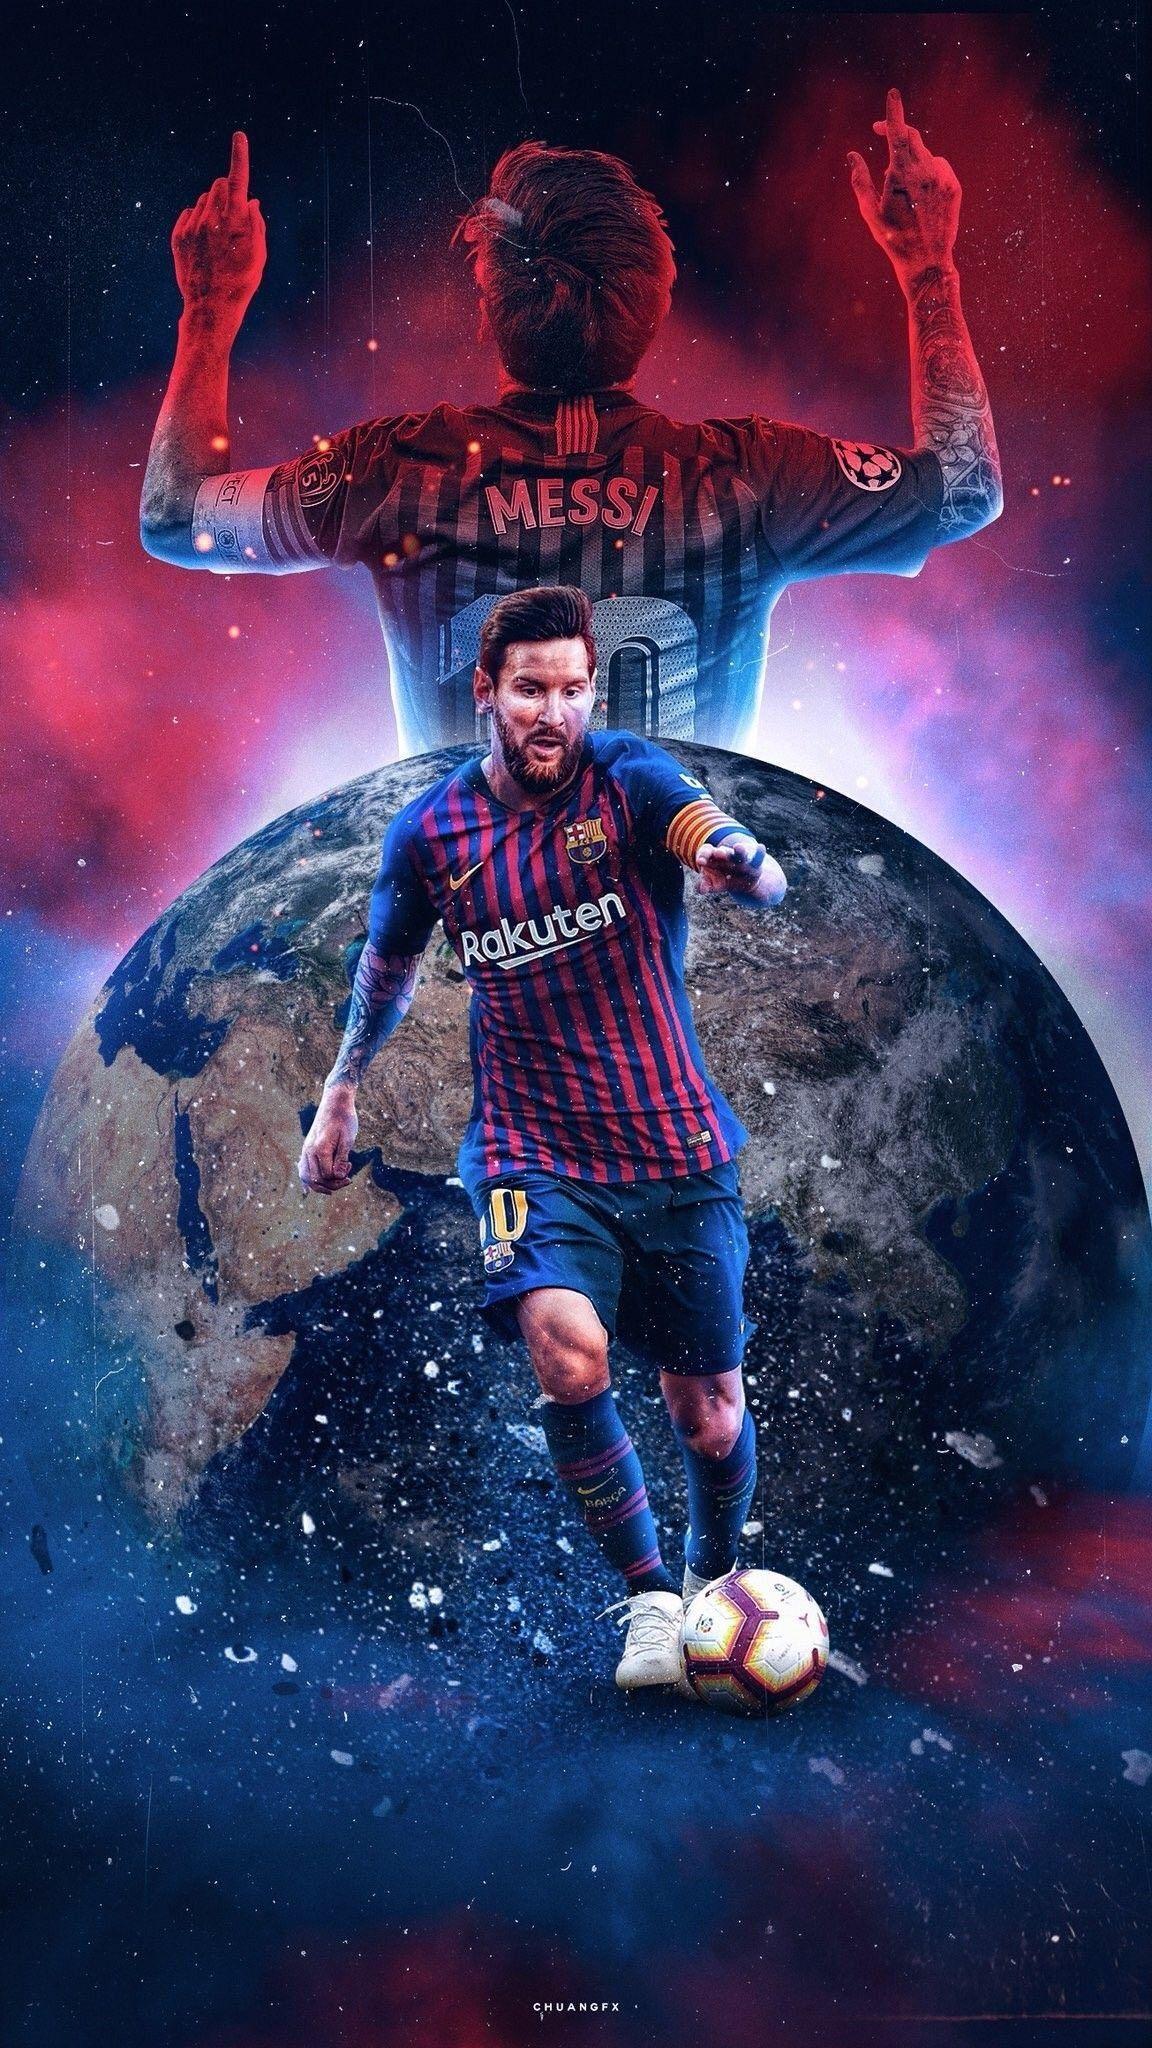 Cùng làm mới điện thoại của bạn với bức ảnh Messi vô cùng chất lượng và ấn tượng. Hãy khiến mọi người ngưỡng mộ với những hình nền thật “cool” và đương nhiên bạn sẽ là người đầu tiên được khen ngợi.